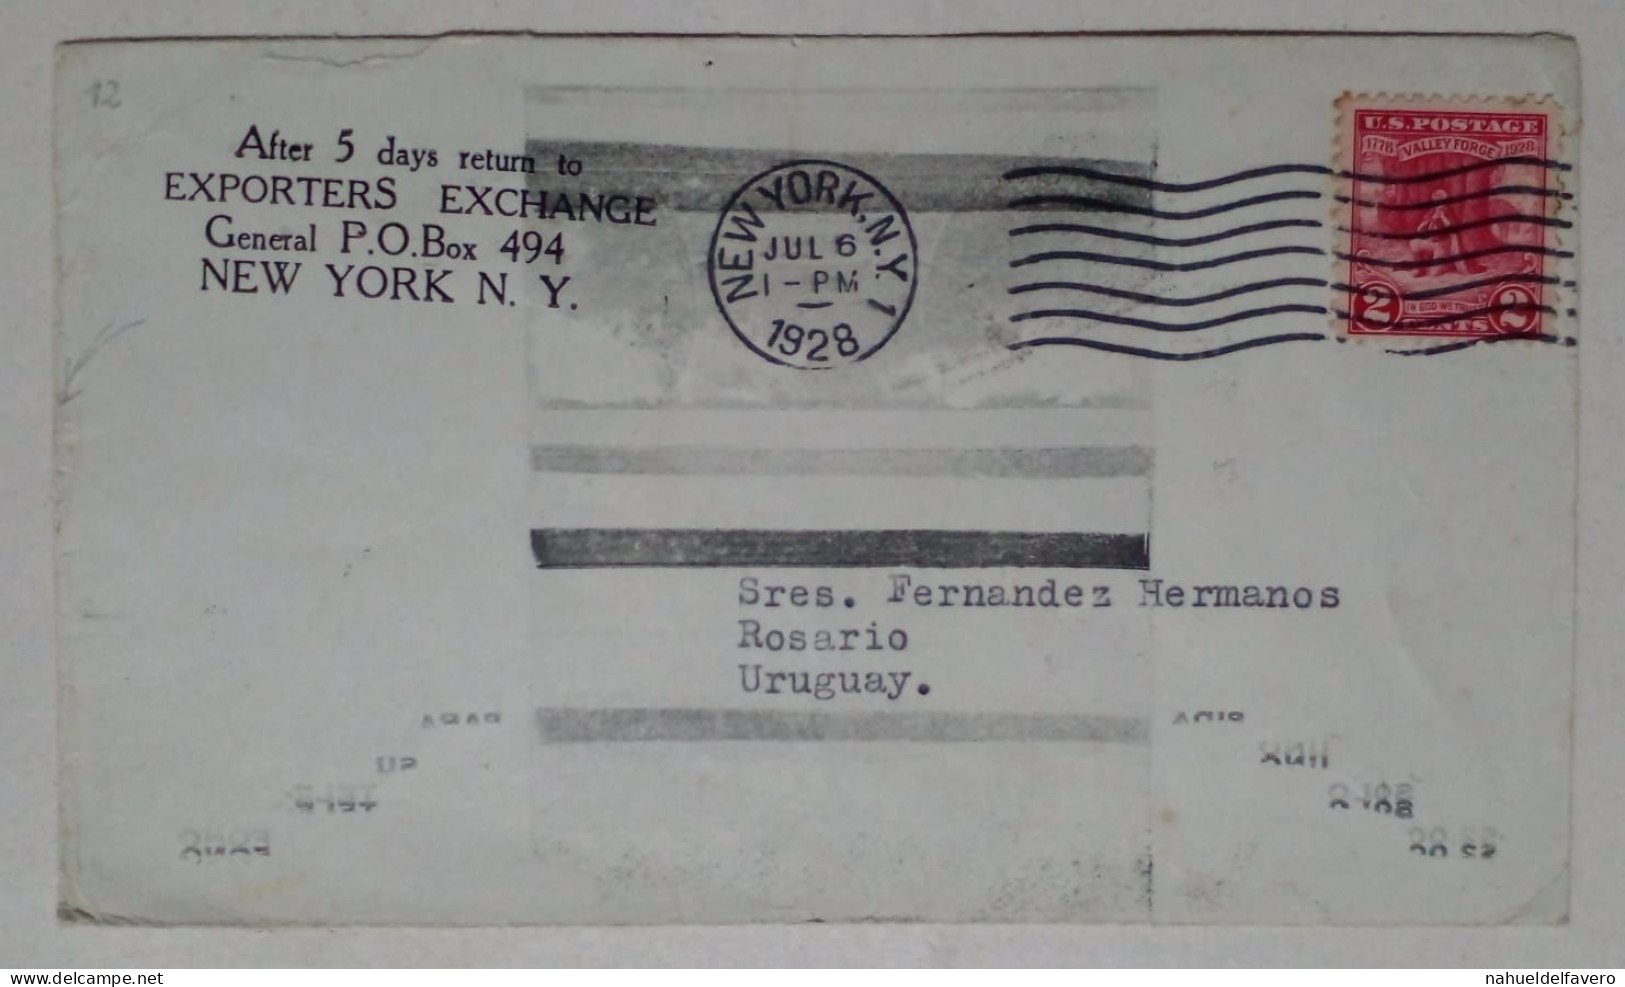 États-Unis - Enveloppe Circulée Sur Le Thème Des Communications (1928) - Oblitérés